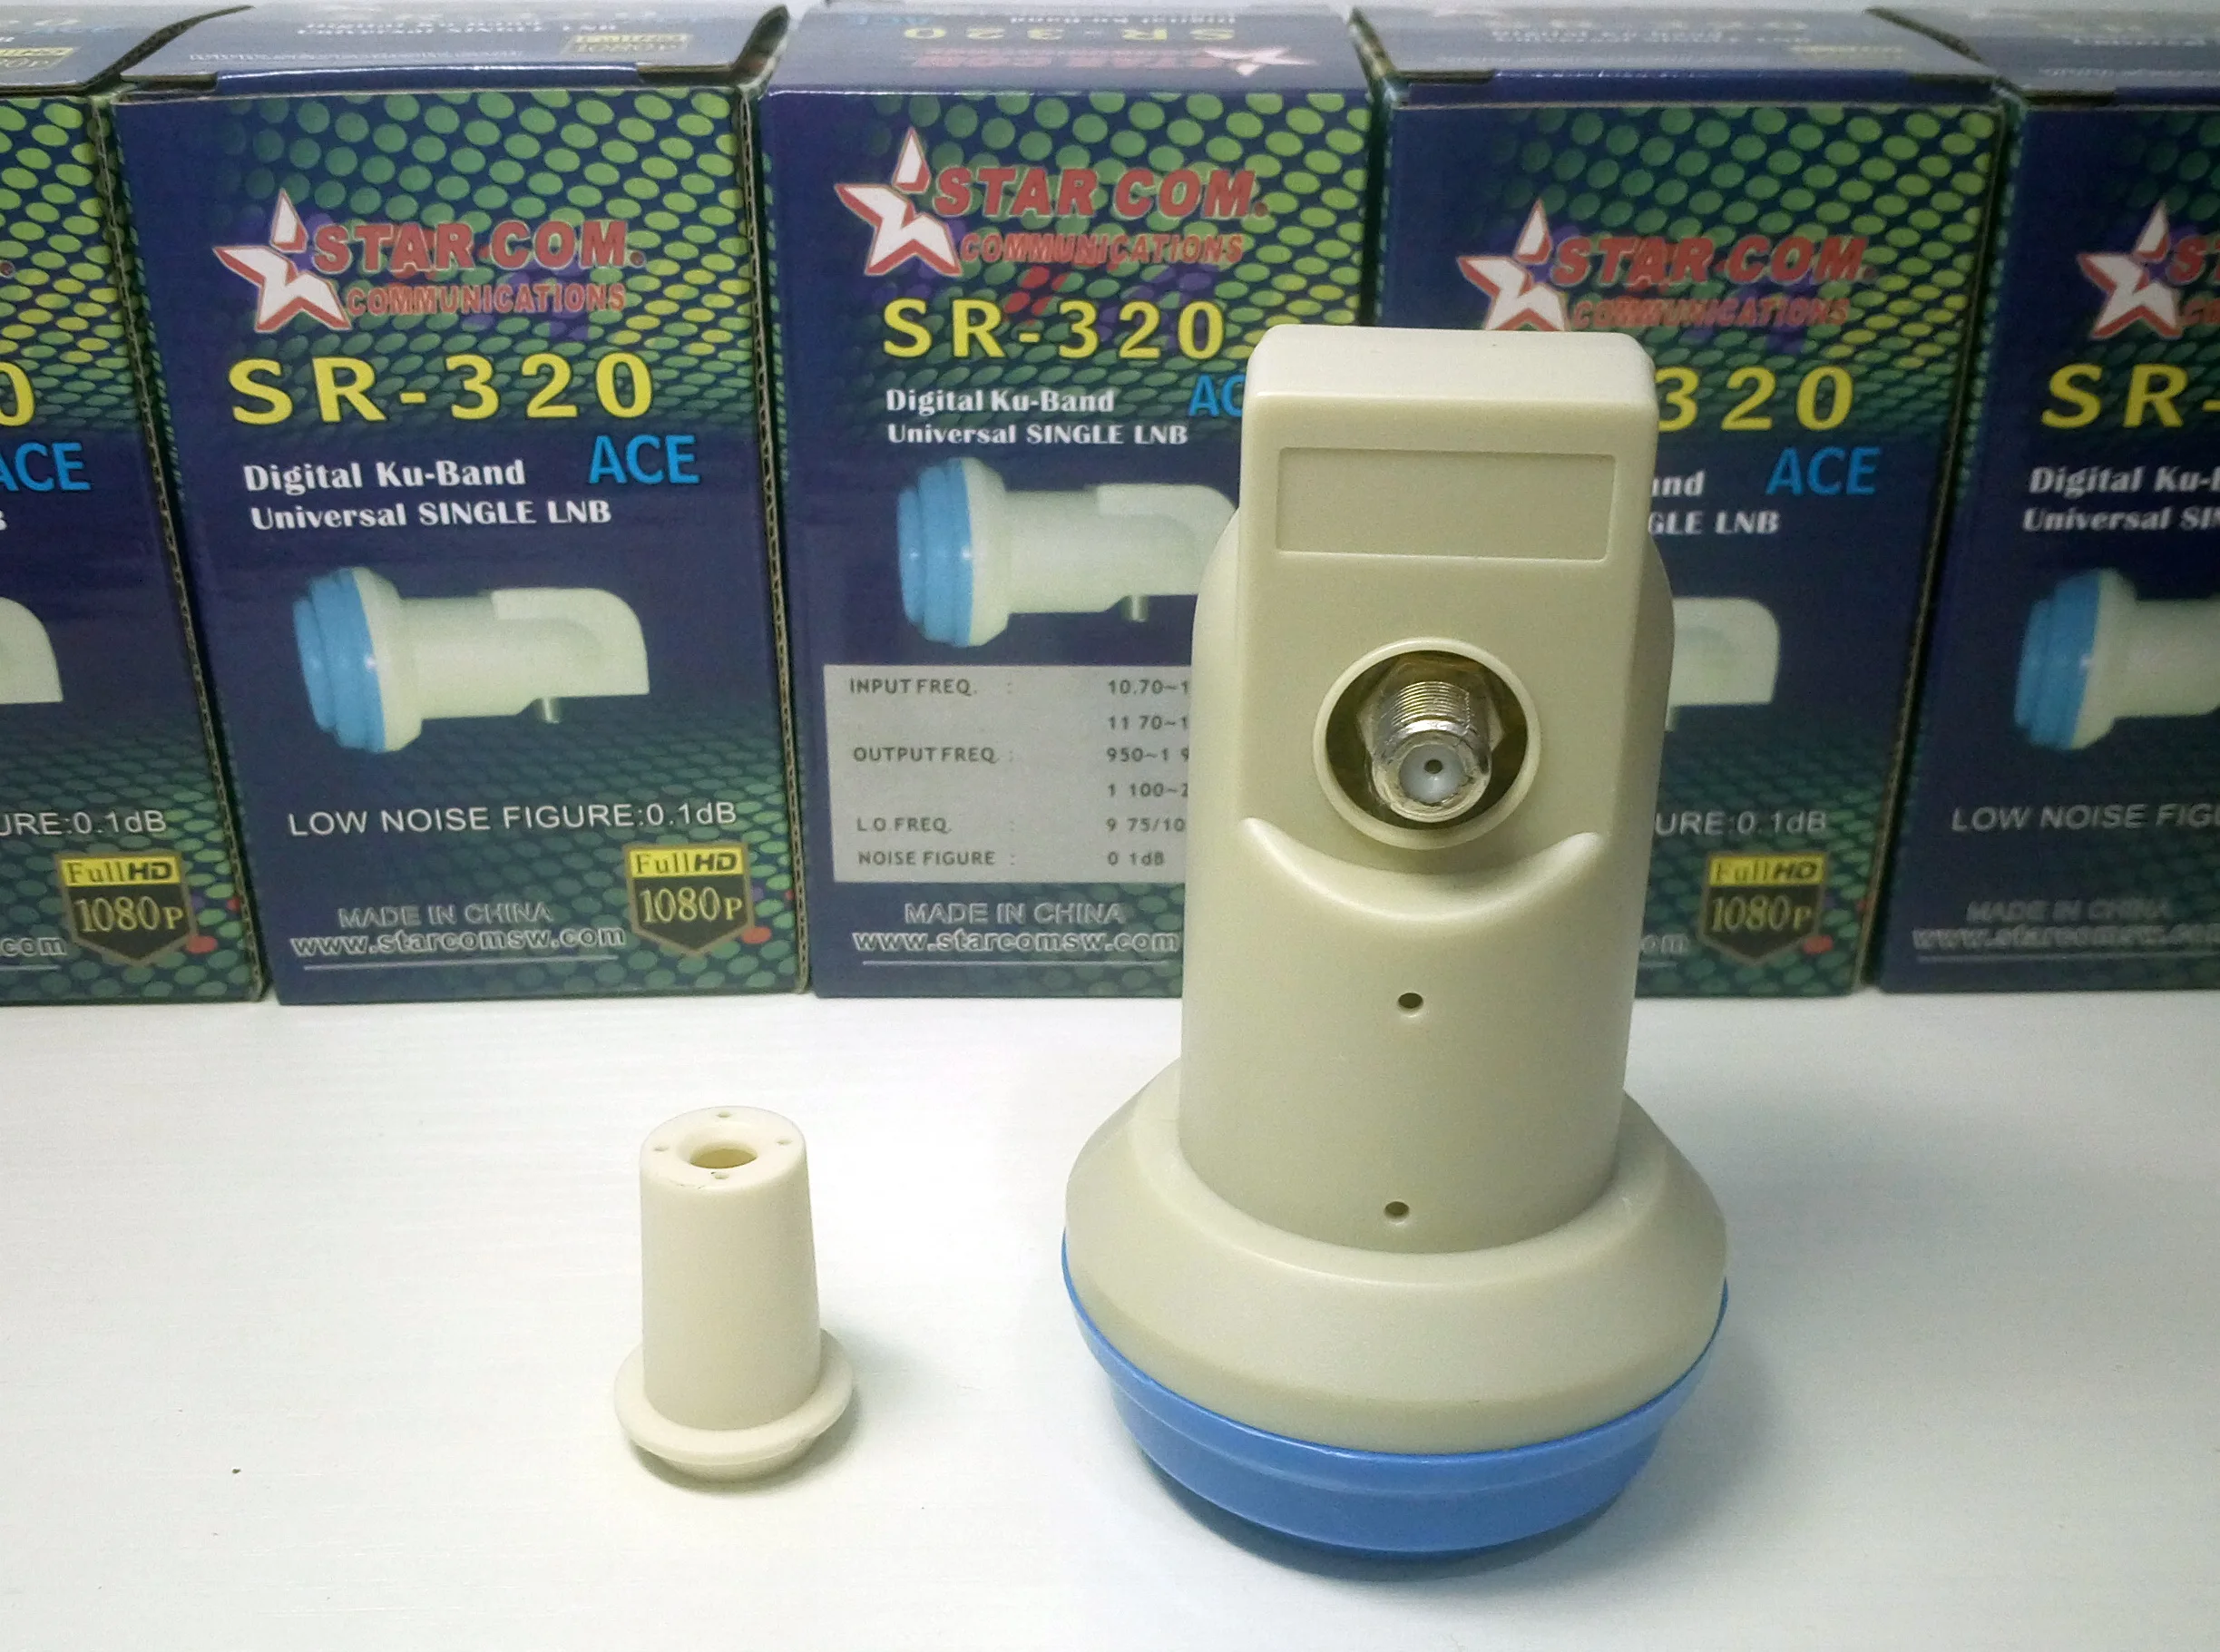 Звезда COM LNB SR-320 лучший цифровой сигнал HD универсальный KU группа single LNB из водонепроницаемого материала с высоким коэффициентом усиления низкий уровень шума спутниковая антенна LNB